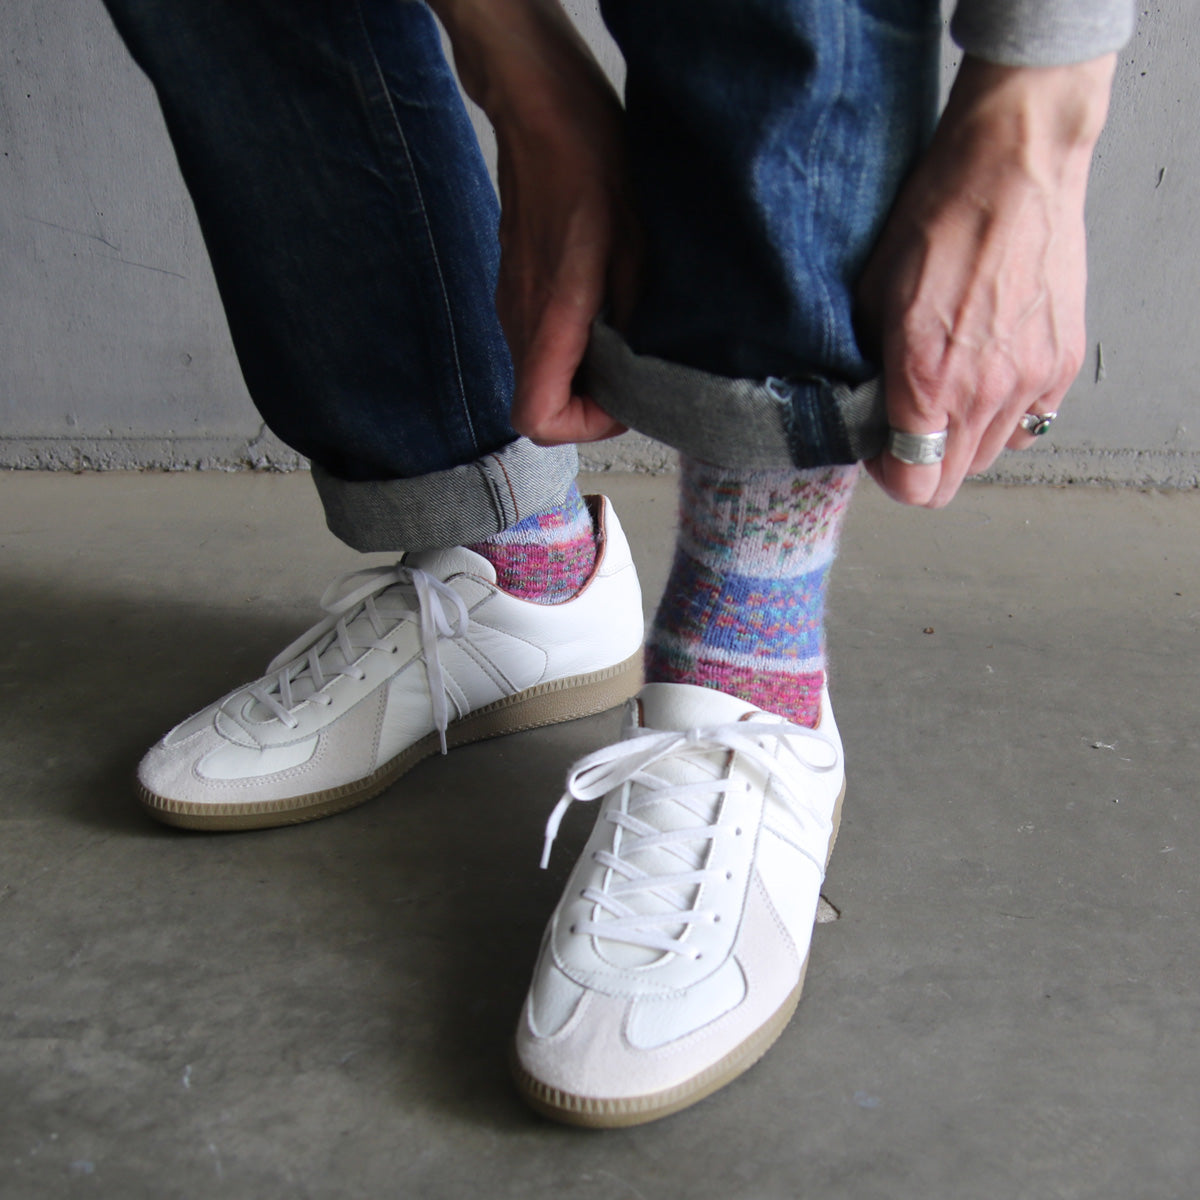 ラナート (LANART) 米国製ベビーアルパカソックス靴下 Artistic Baby Alpaca Socks[FRIDA/CANDY]